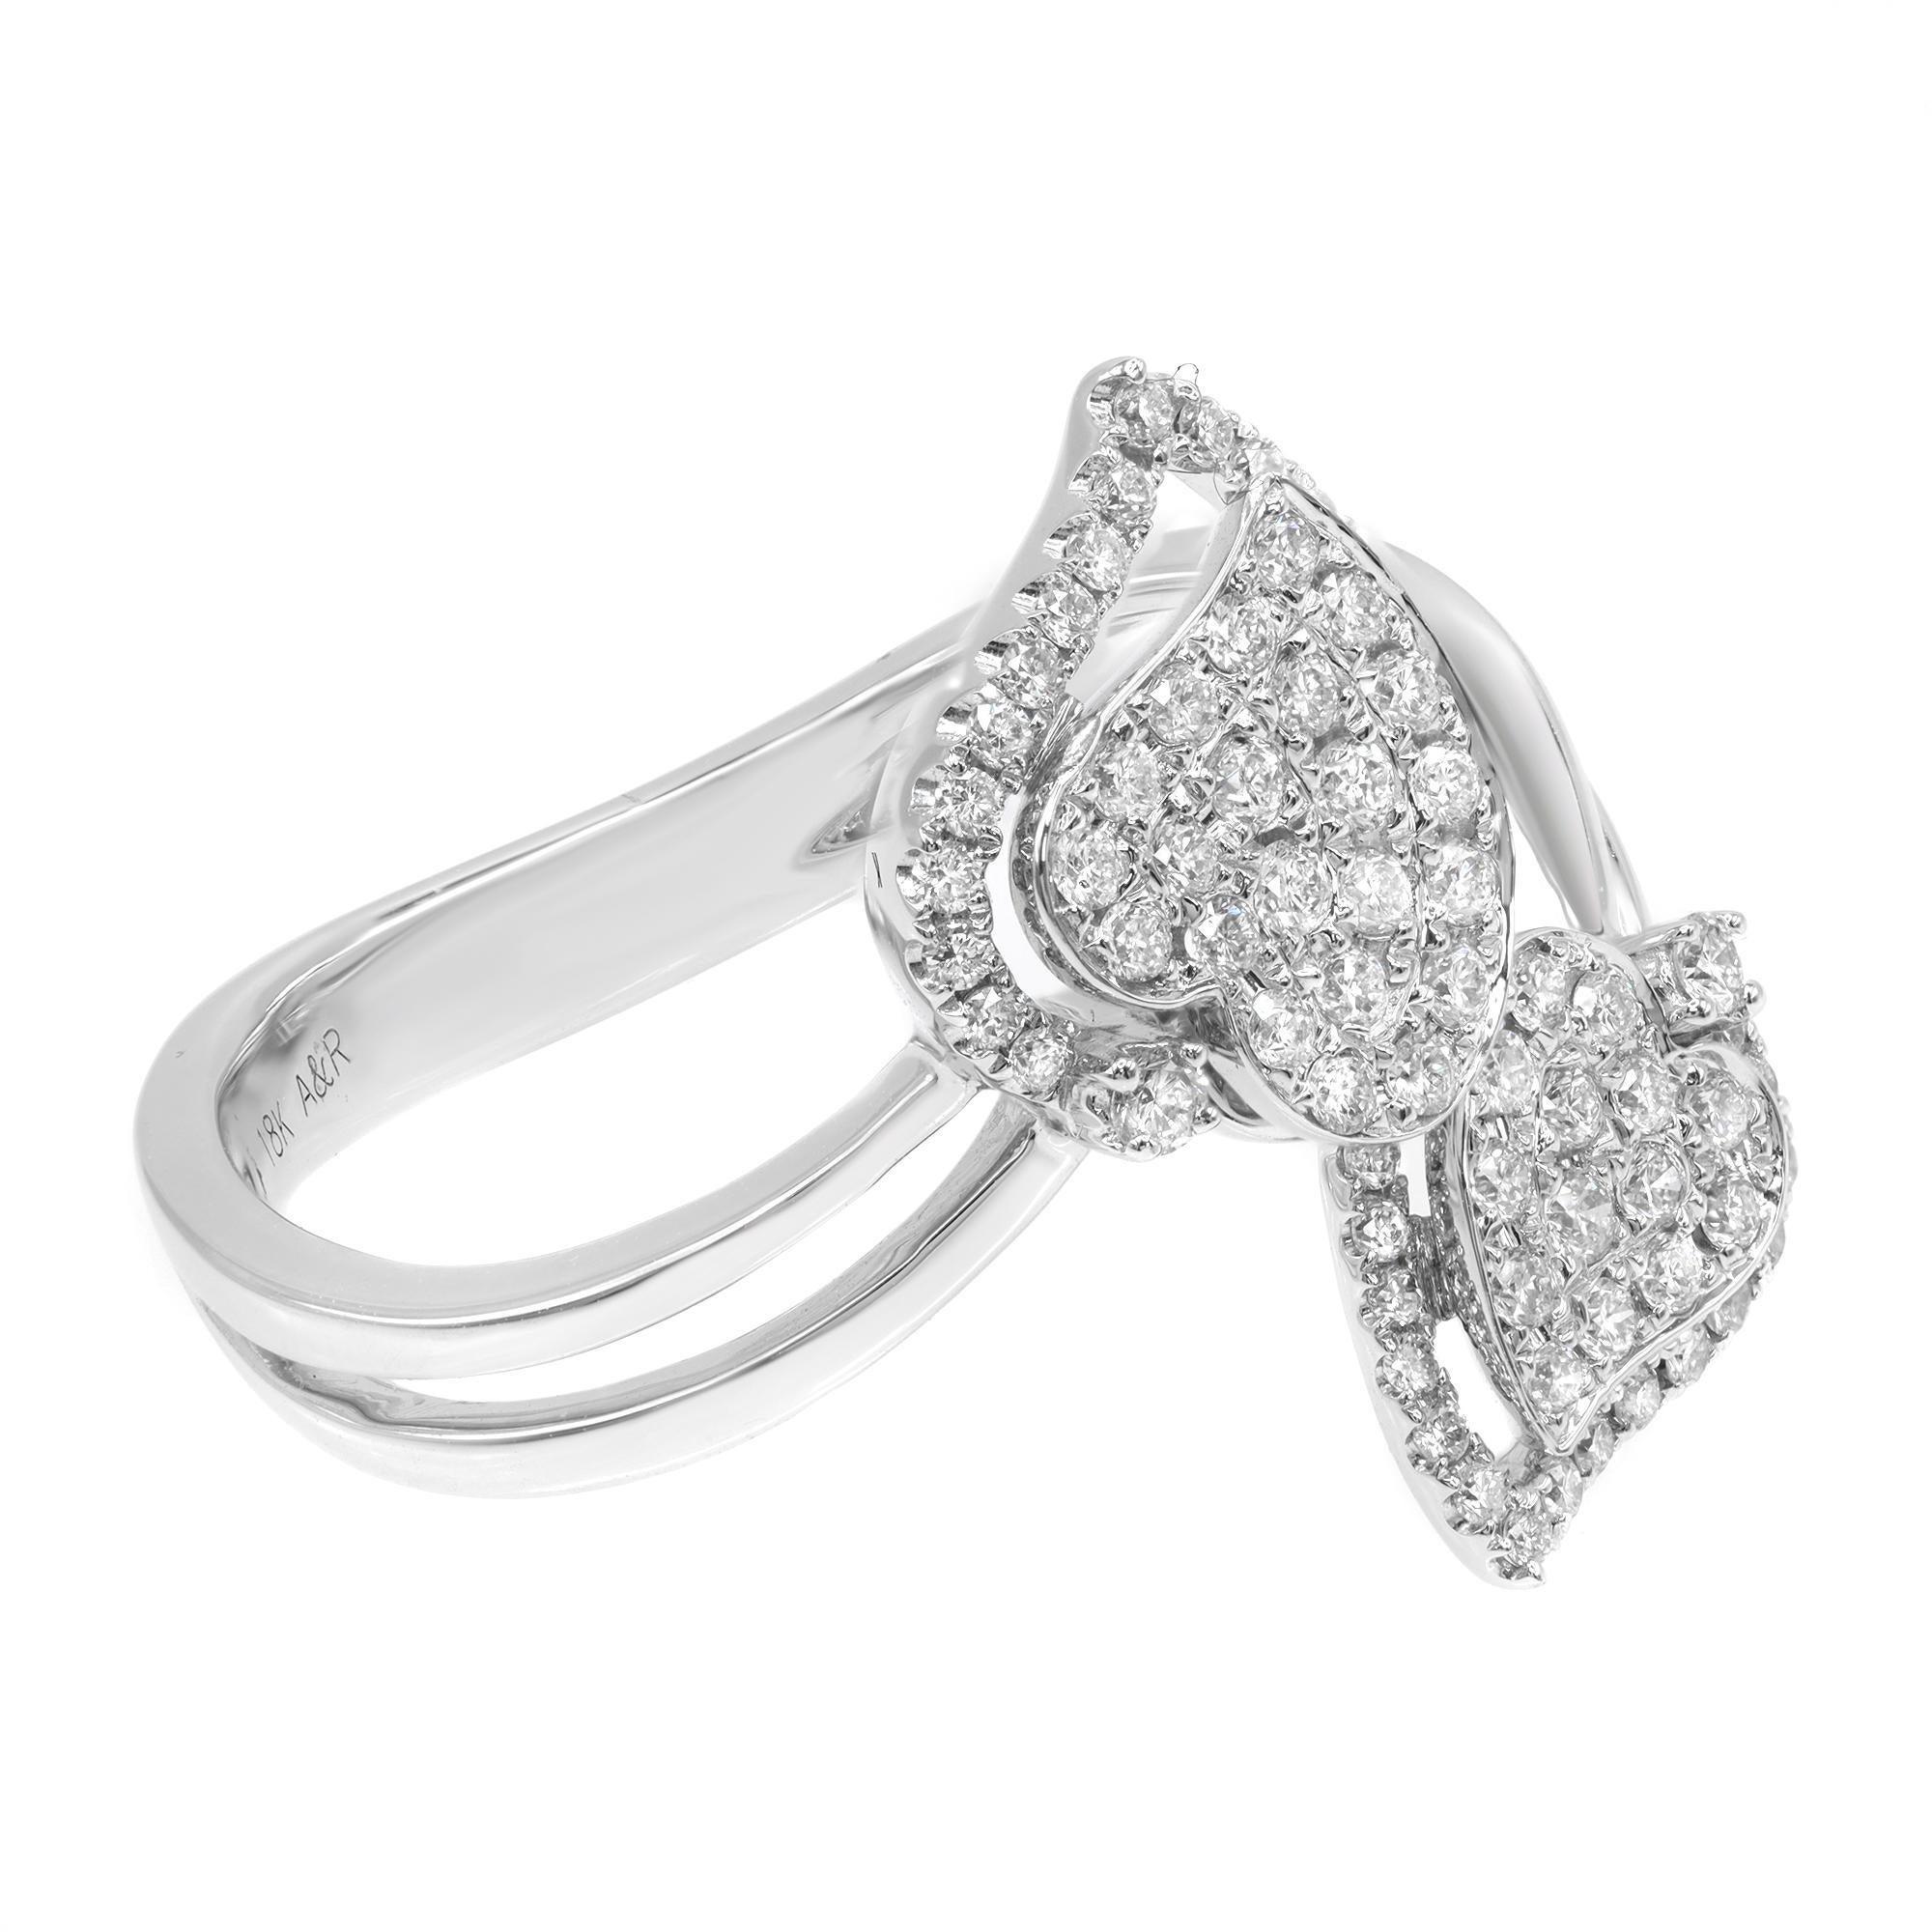 Modern Rachel Koen Double Heart Diamond Ring 18K White Gold 0.53Cttw For Sale